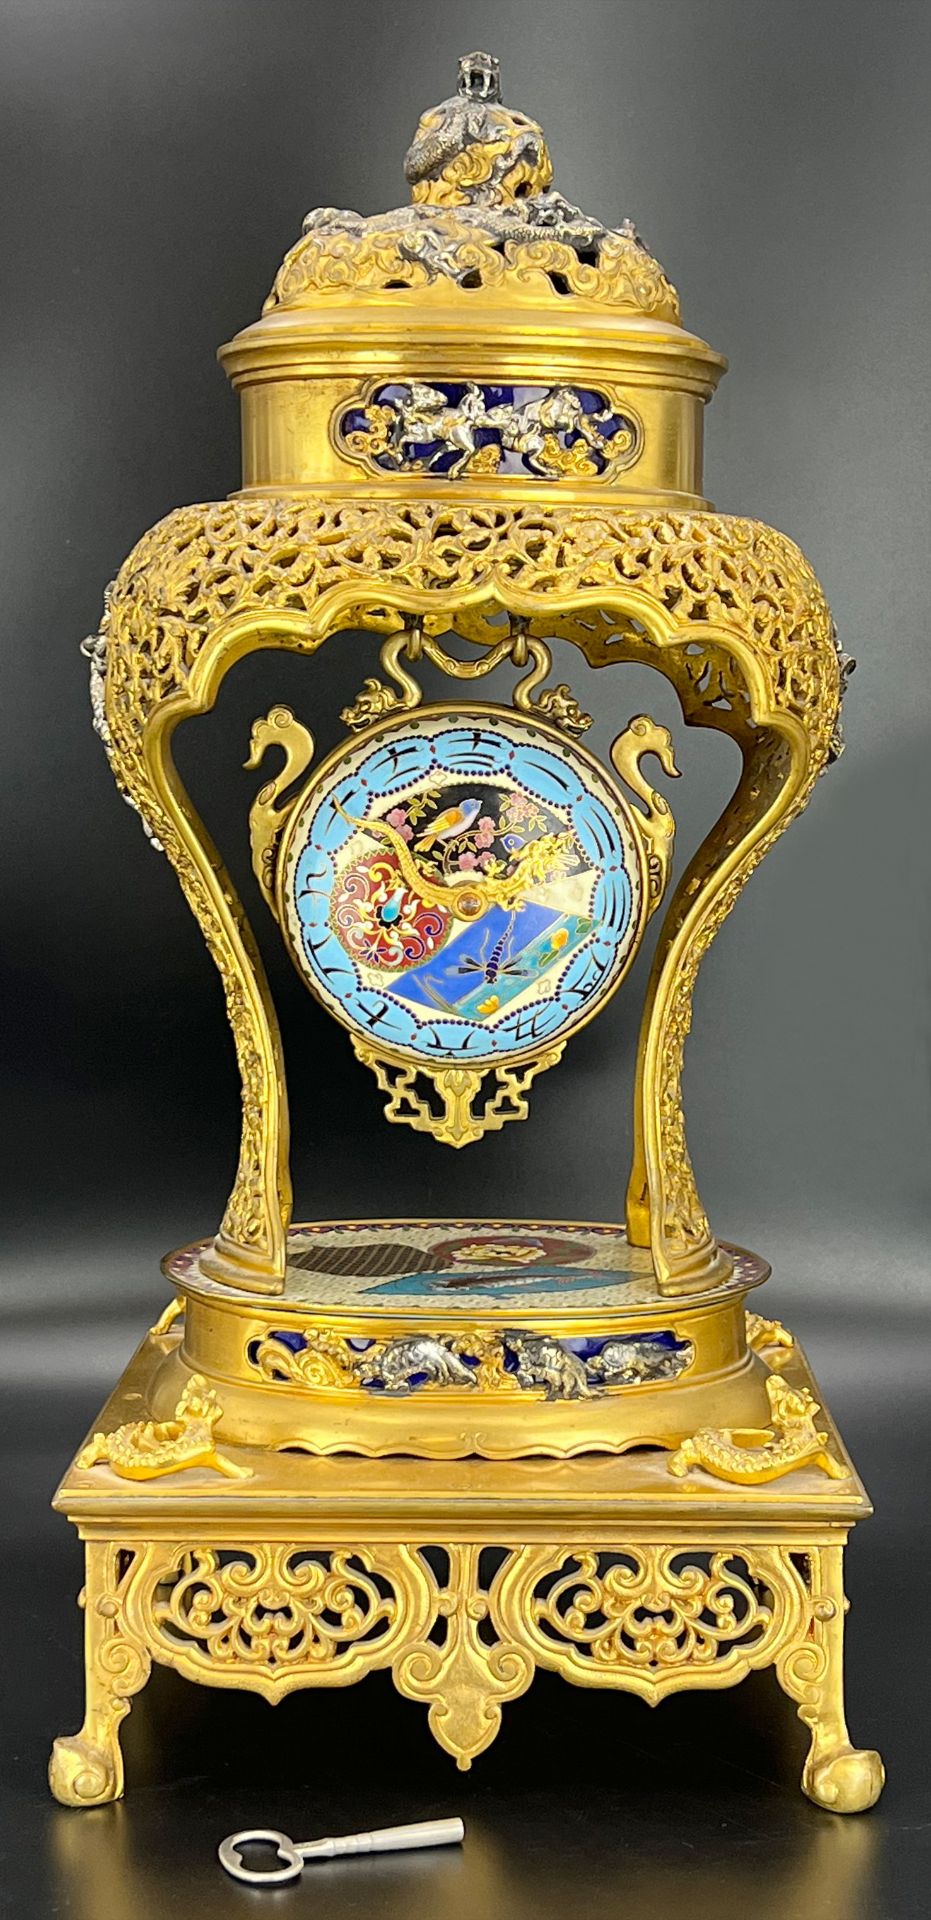 Tam-Tam cuirasse clock. L'Escalier de Cristal, Pannier-Lahoche & Cie. c. 1900.